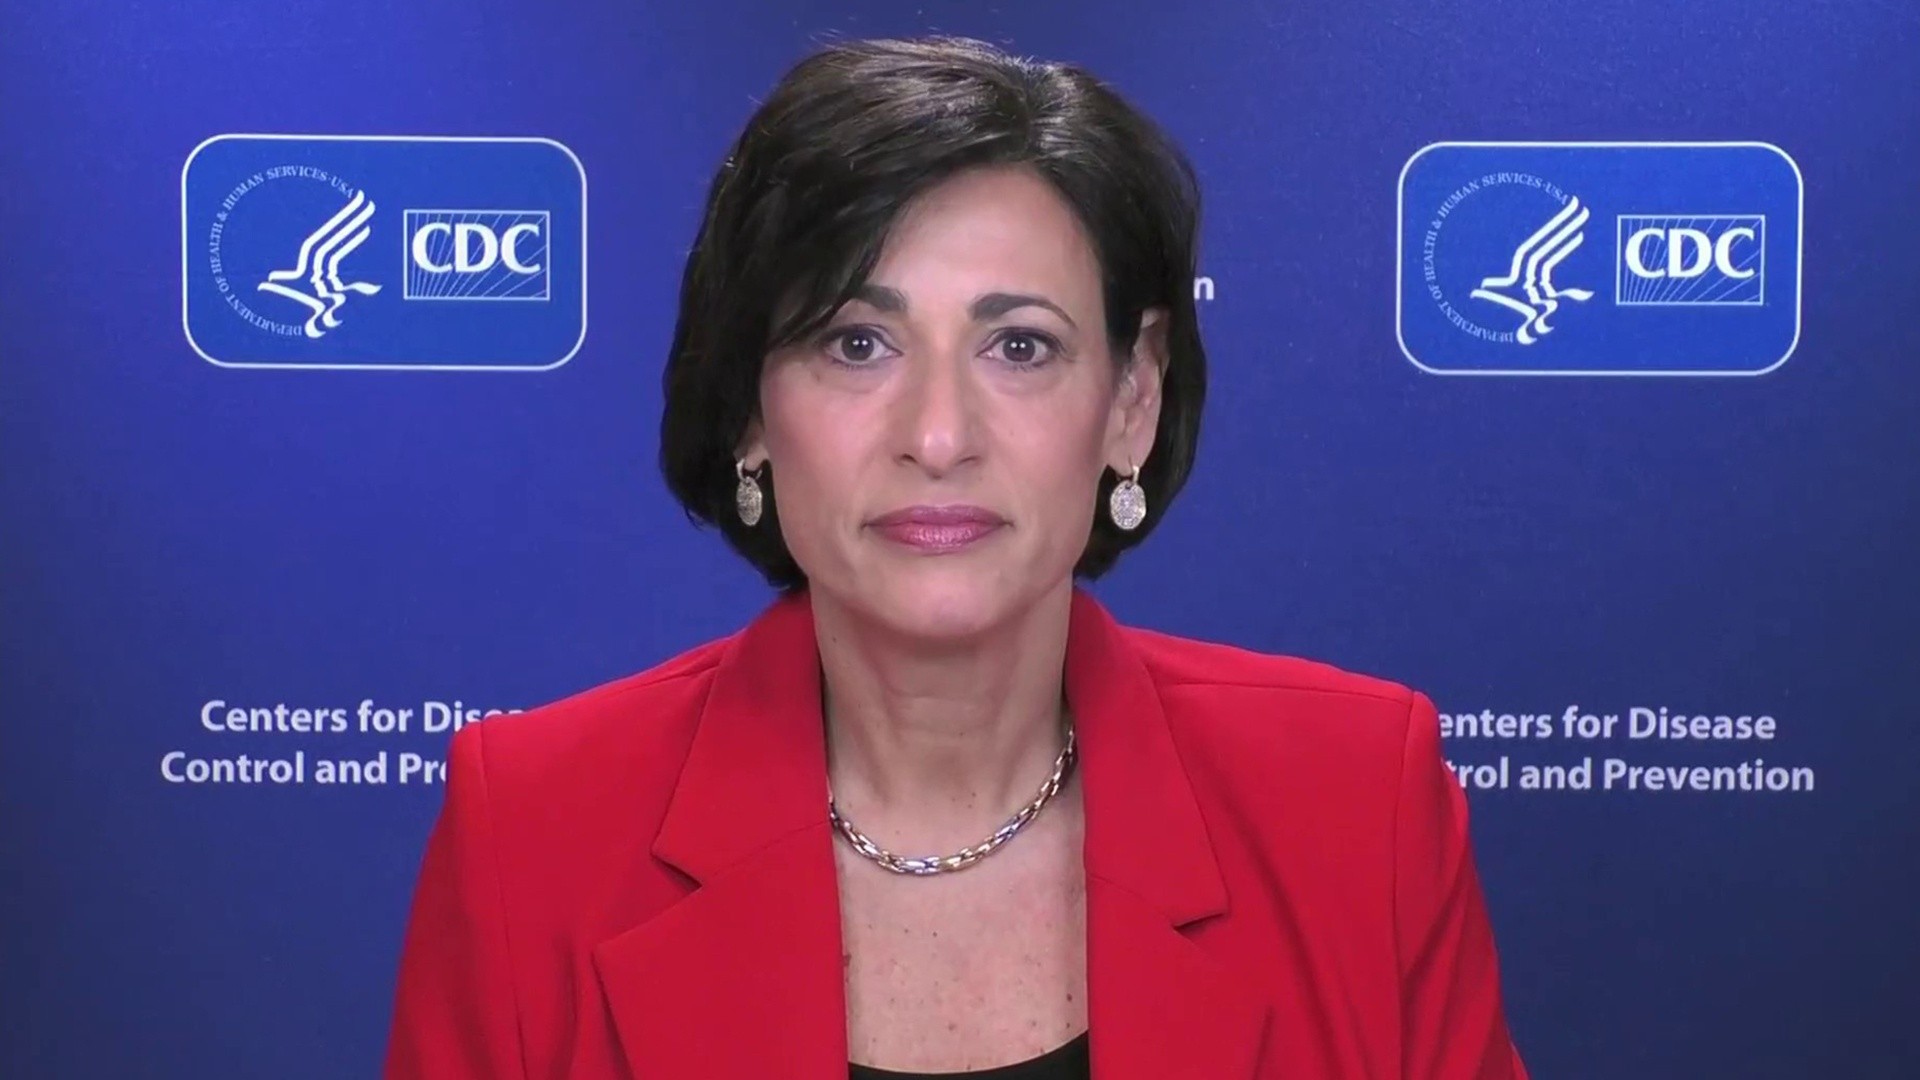 Δημόσια ομολογία από τη διευθύντρια του CDC: «Αποτύχαμε στην έγκαιρη αντιμετώπιση της πανδημίας κορωνοϊού»